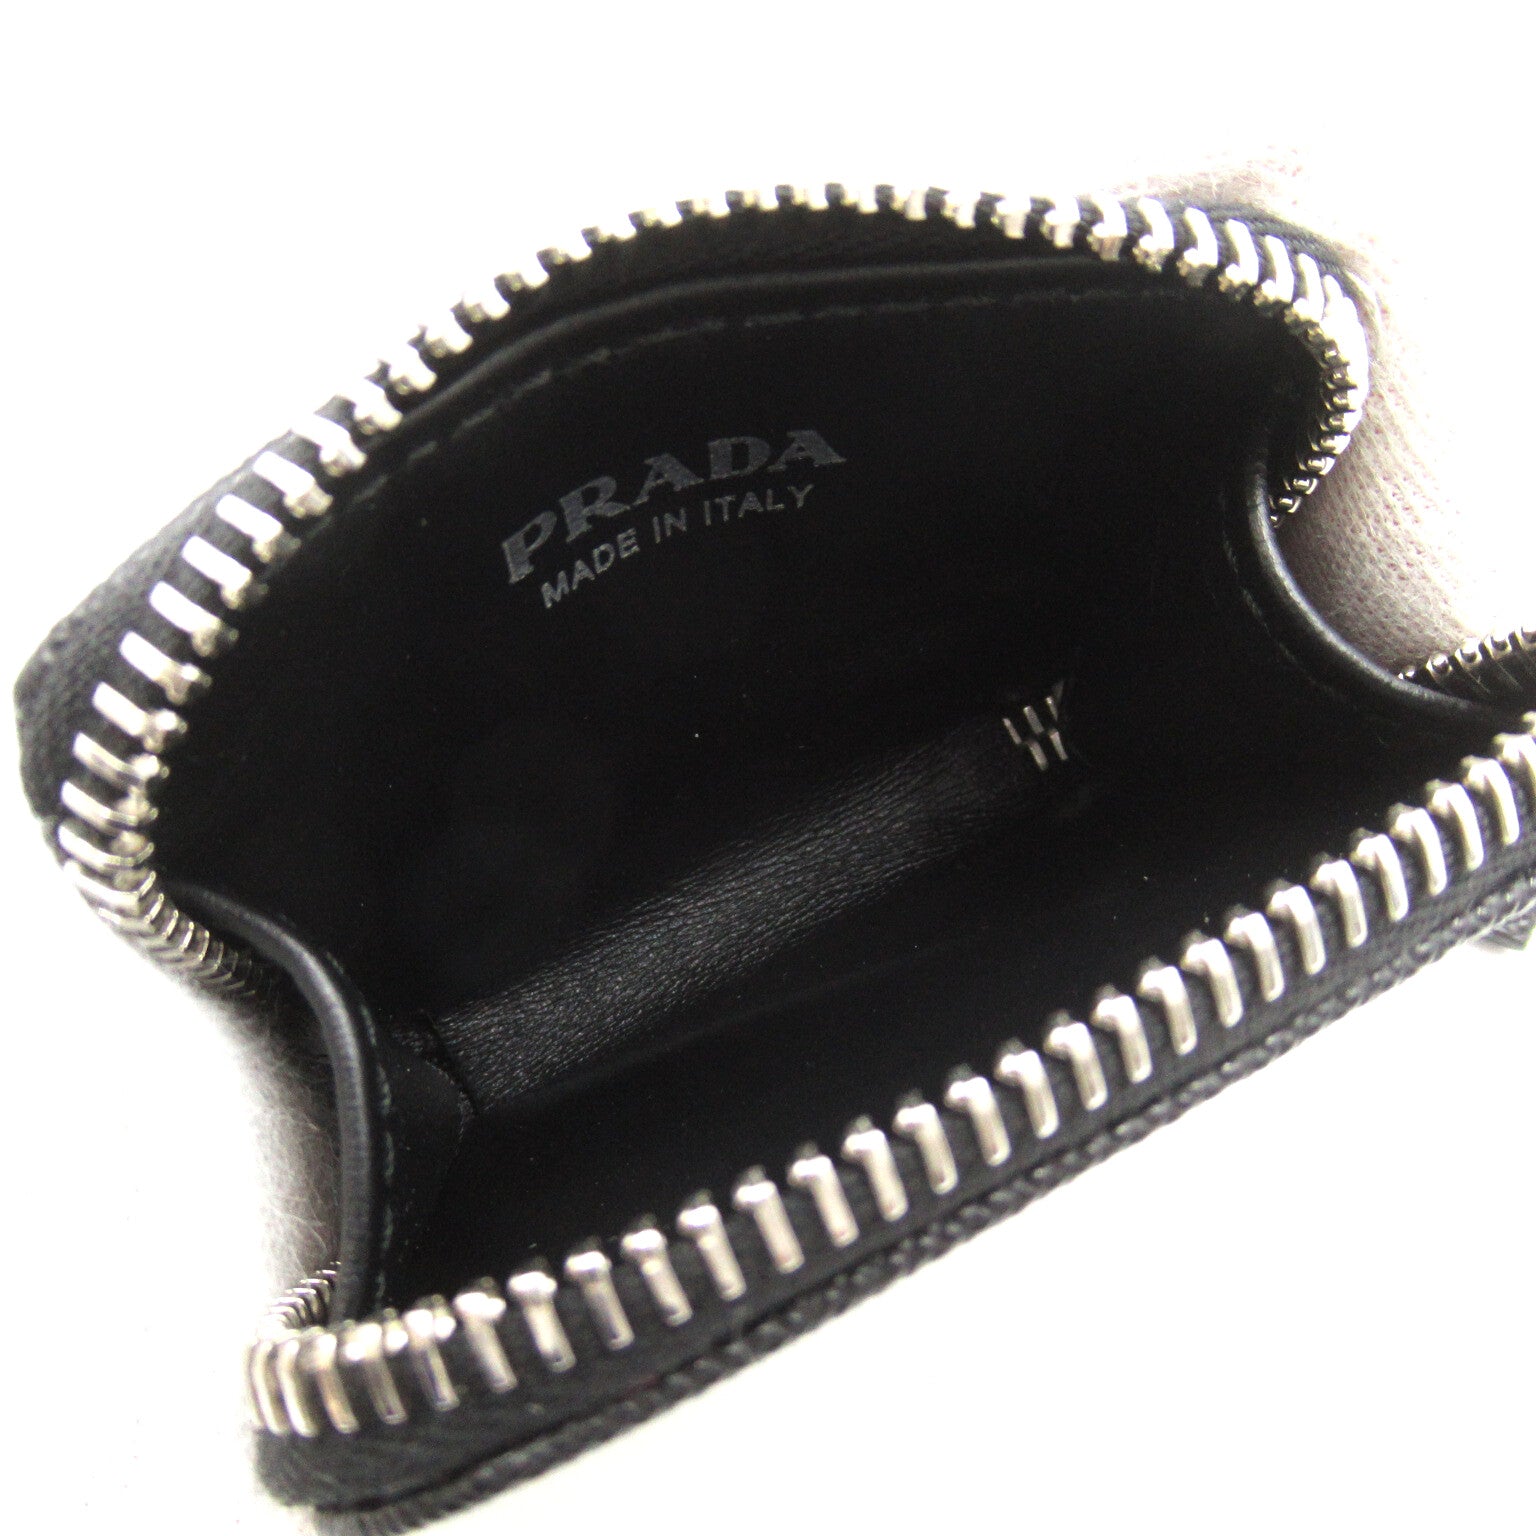 Prada Shoulder Bag Shoulder Bag Sapphire Leather   Black 2VH1709Z2 (OOO) F0002